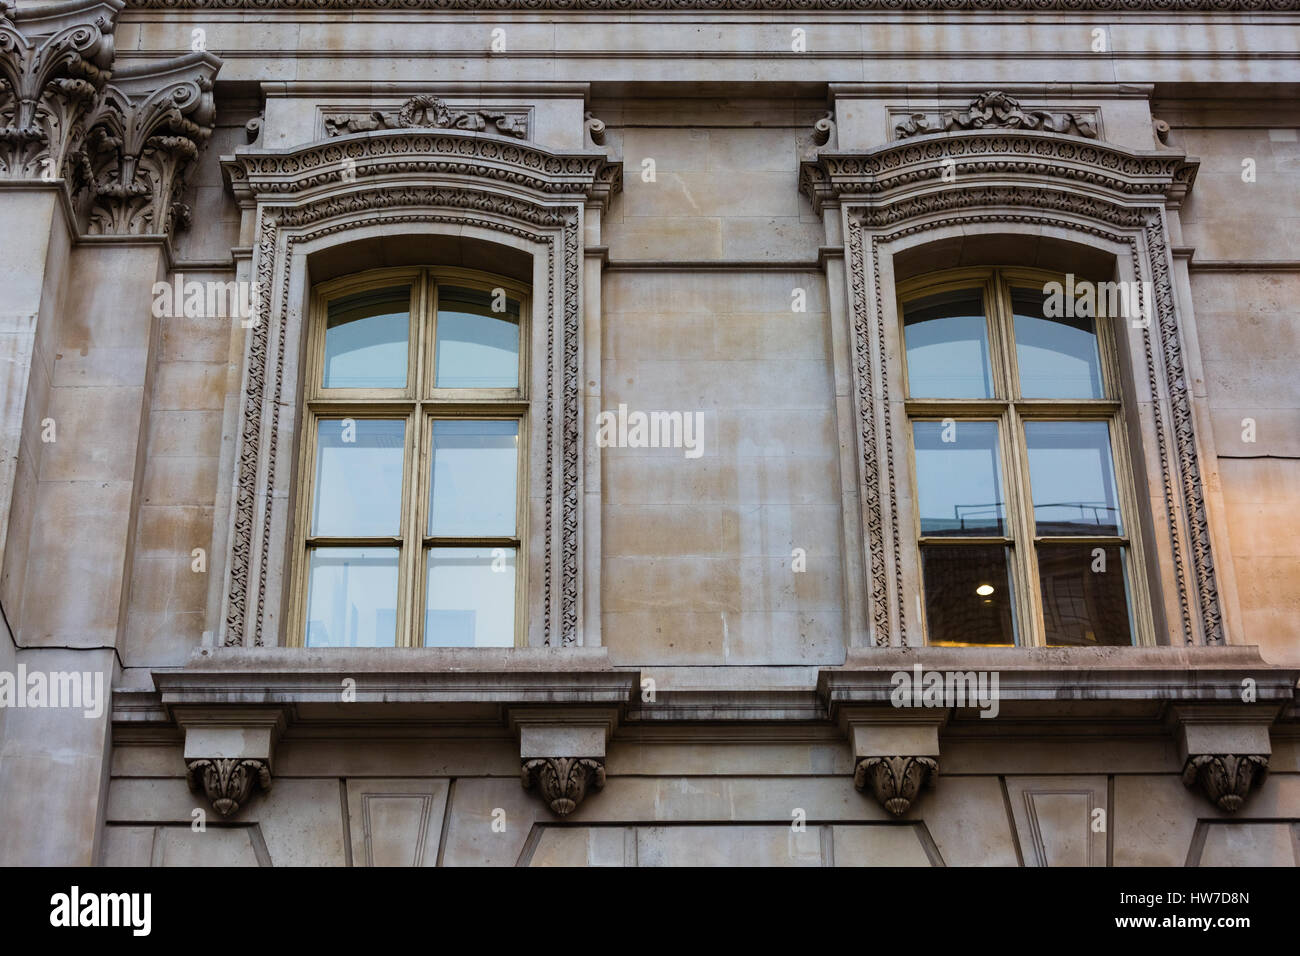 Fachada de un edificio de estilo de arquitectura clásica en Londres Foto de stock